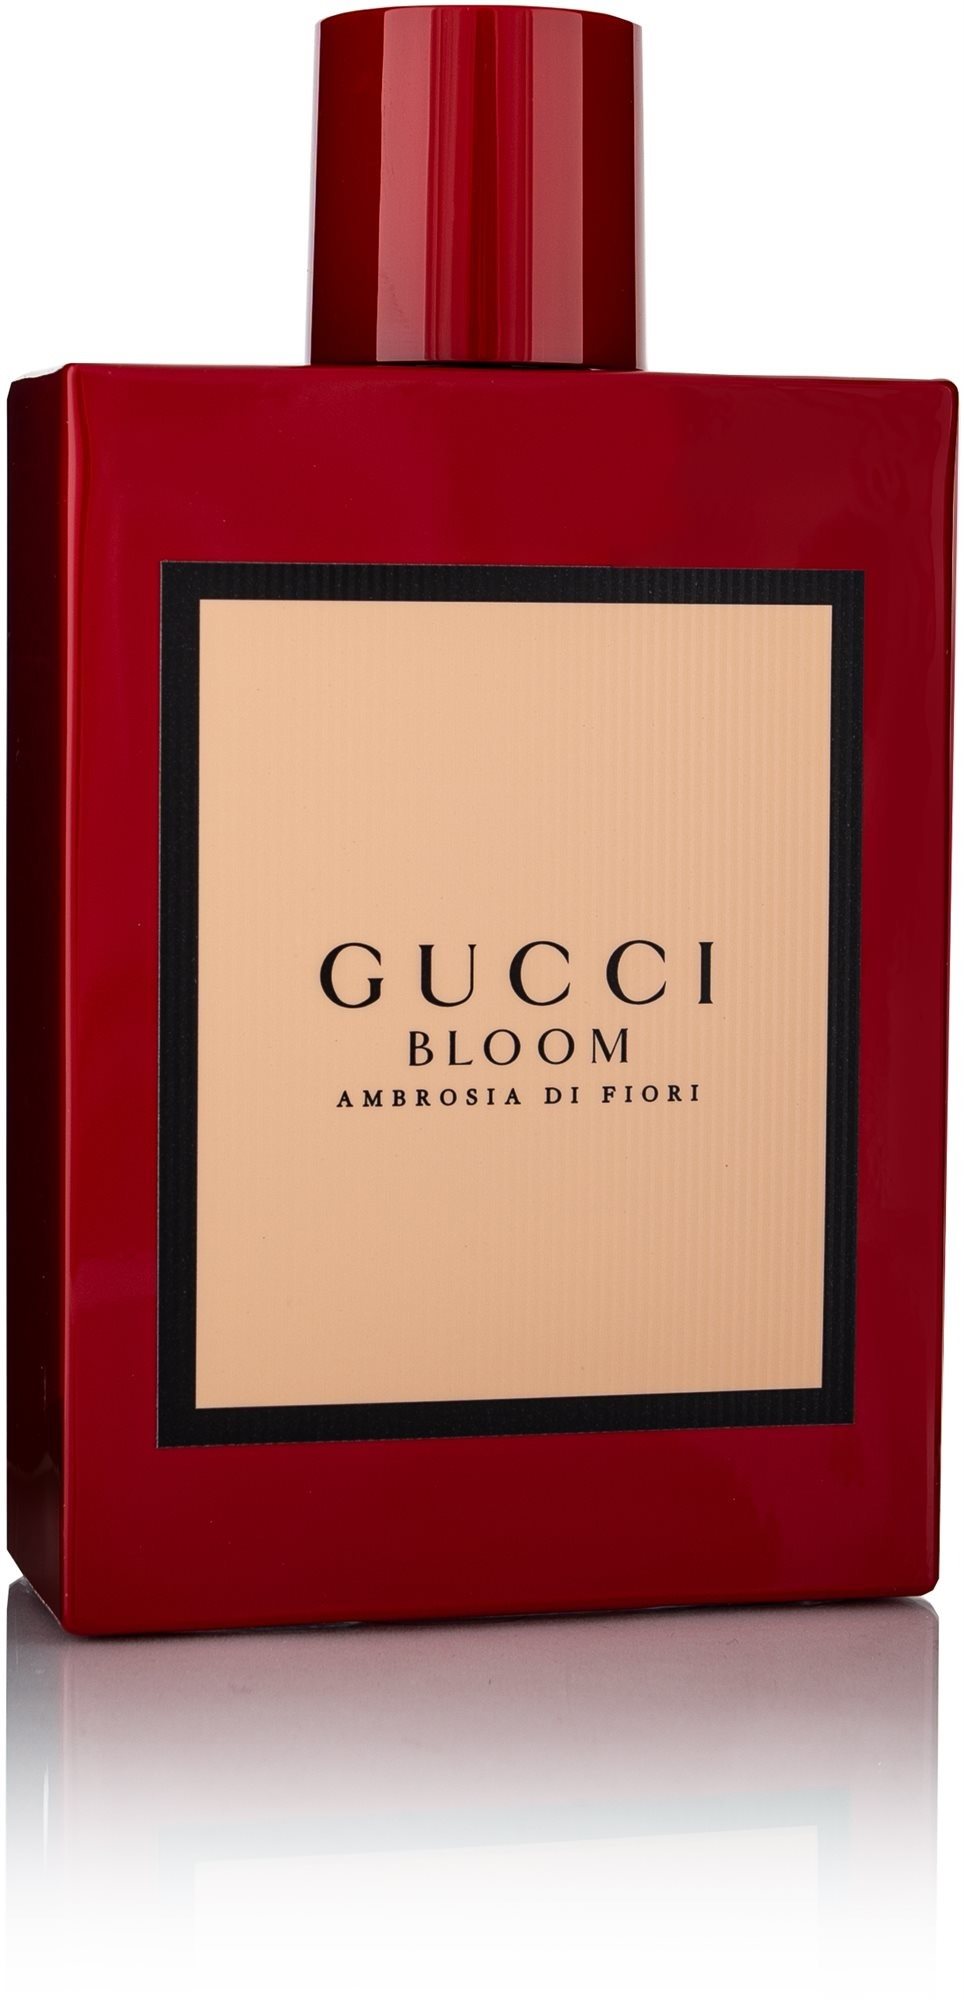 Gucci Bloom Ambrosia di Fiori Eau de Parfum hölgyeknek 100 ml